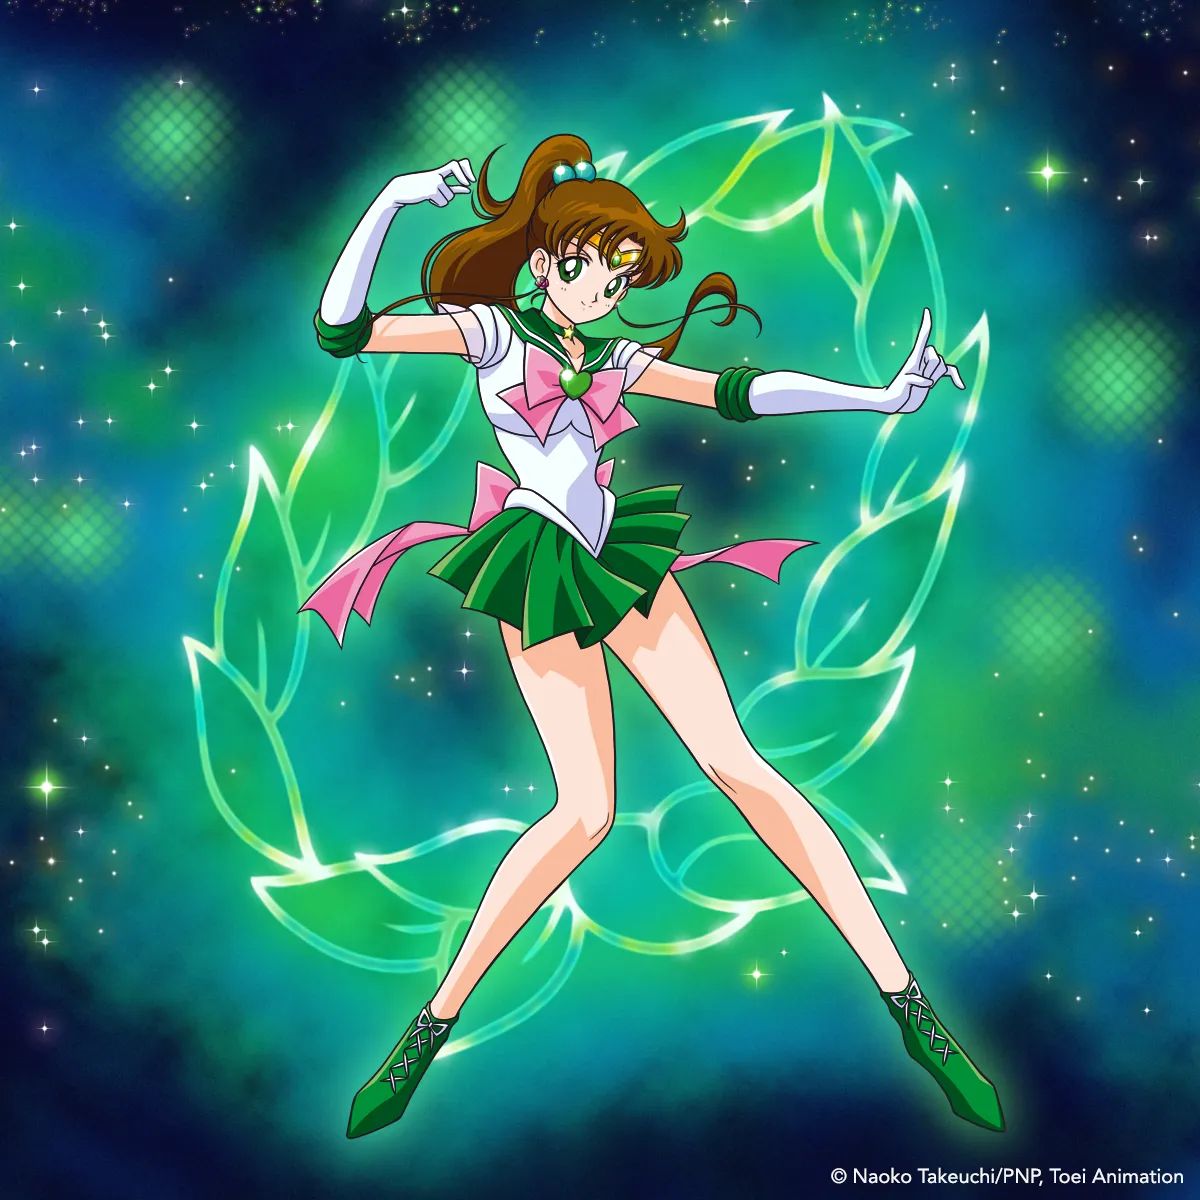 10 Melhores Personagens de Sailor Moon Crystal, classificados